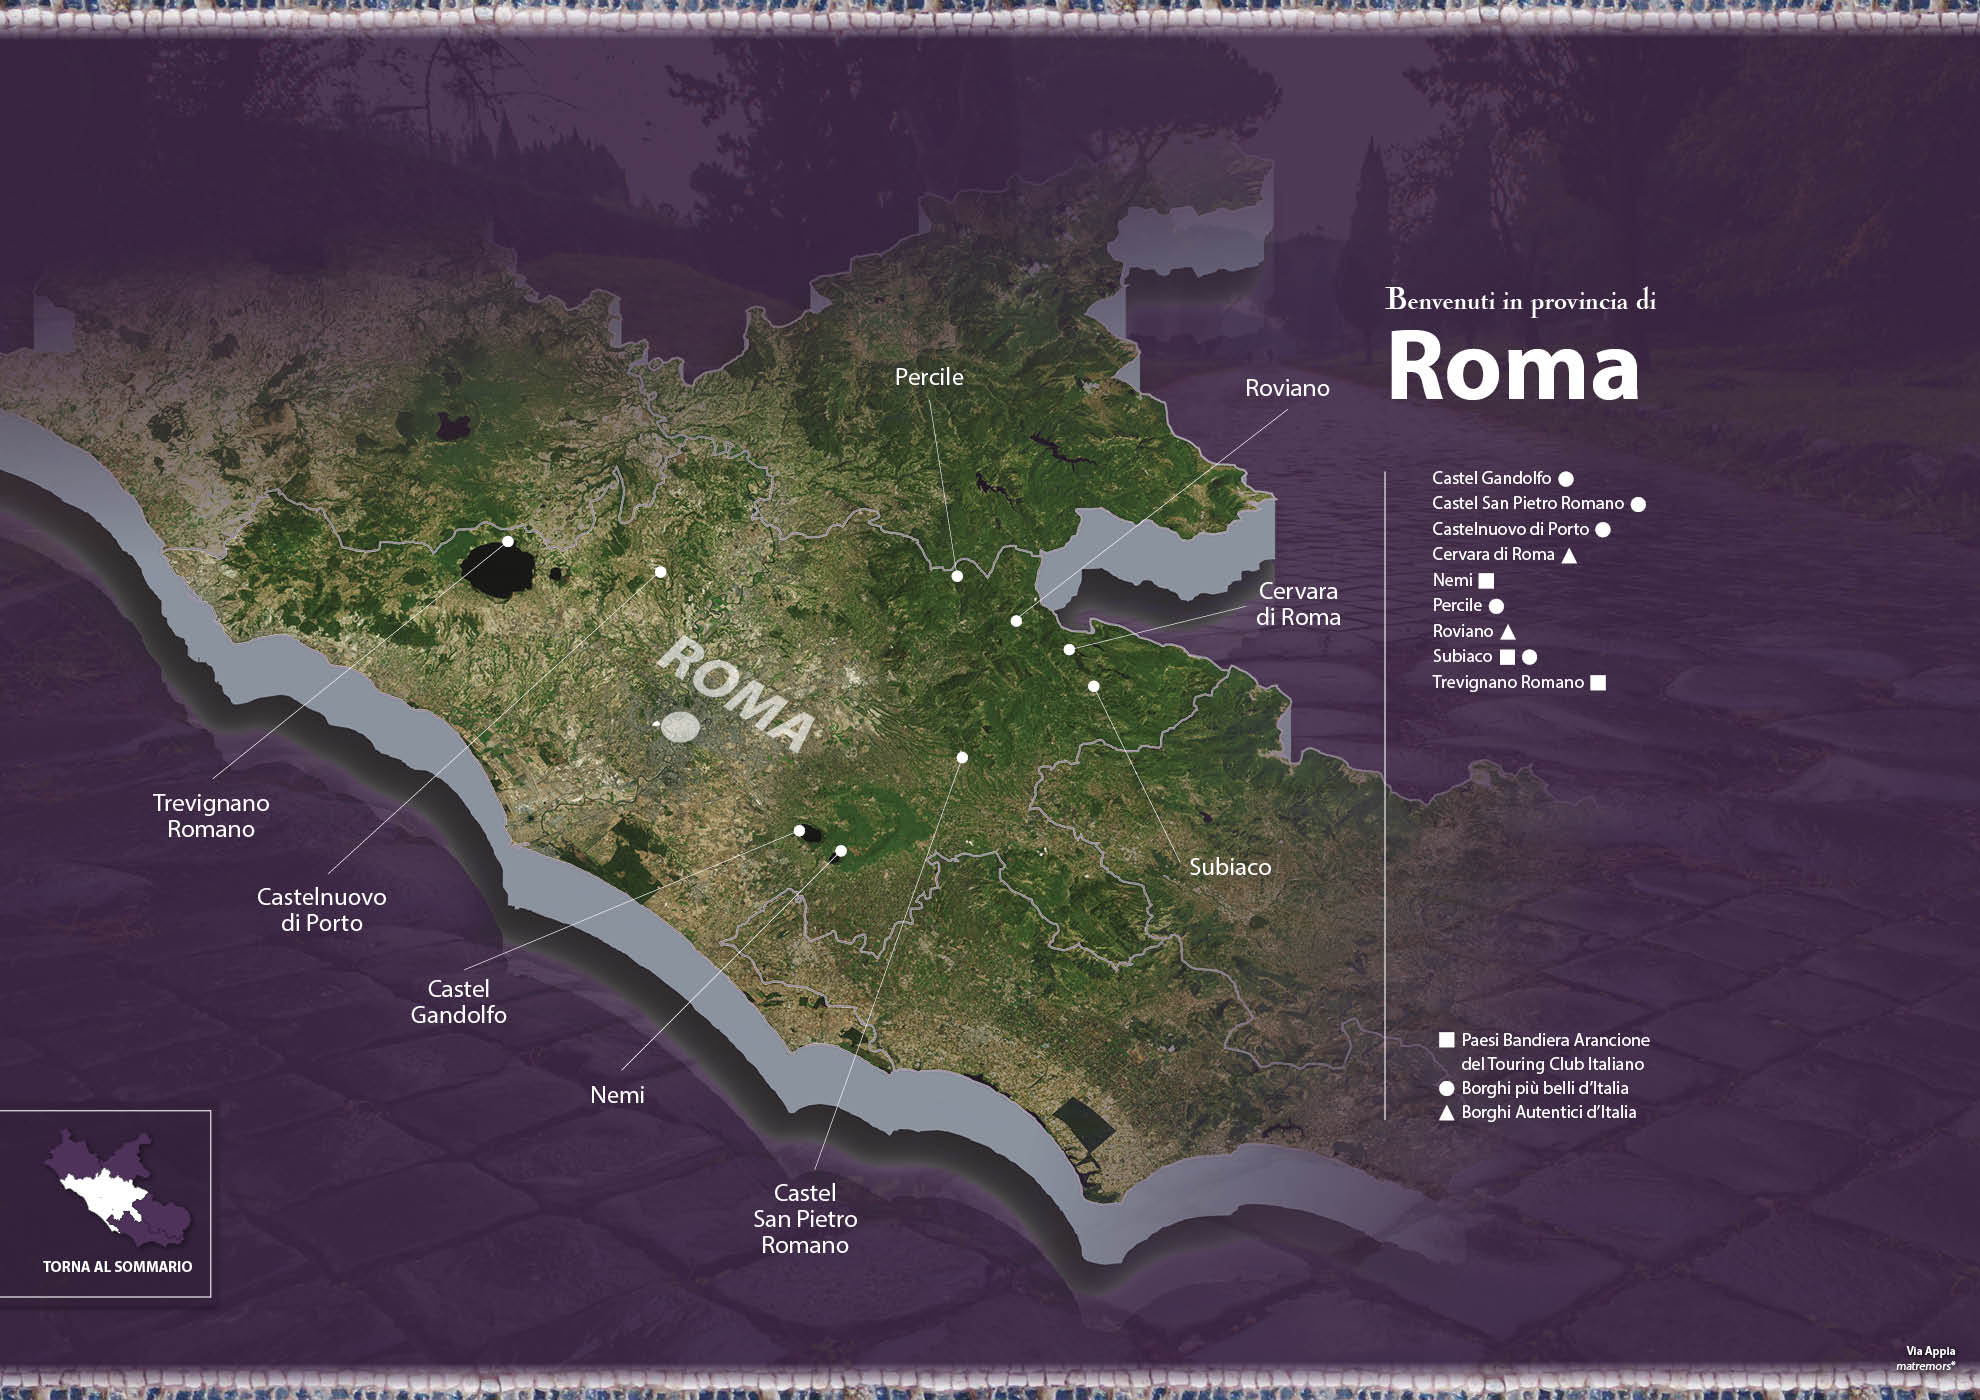 e-borghi travel 30: Guida ai borghi del Lazio - Borghi in provincia di Roma